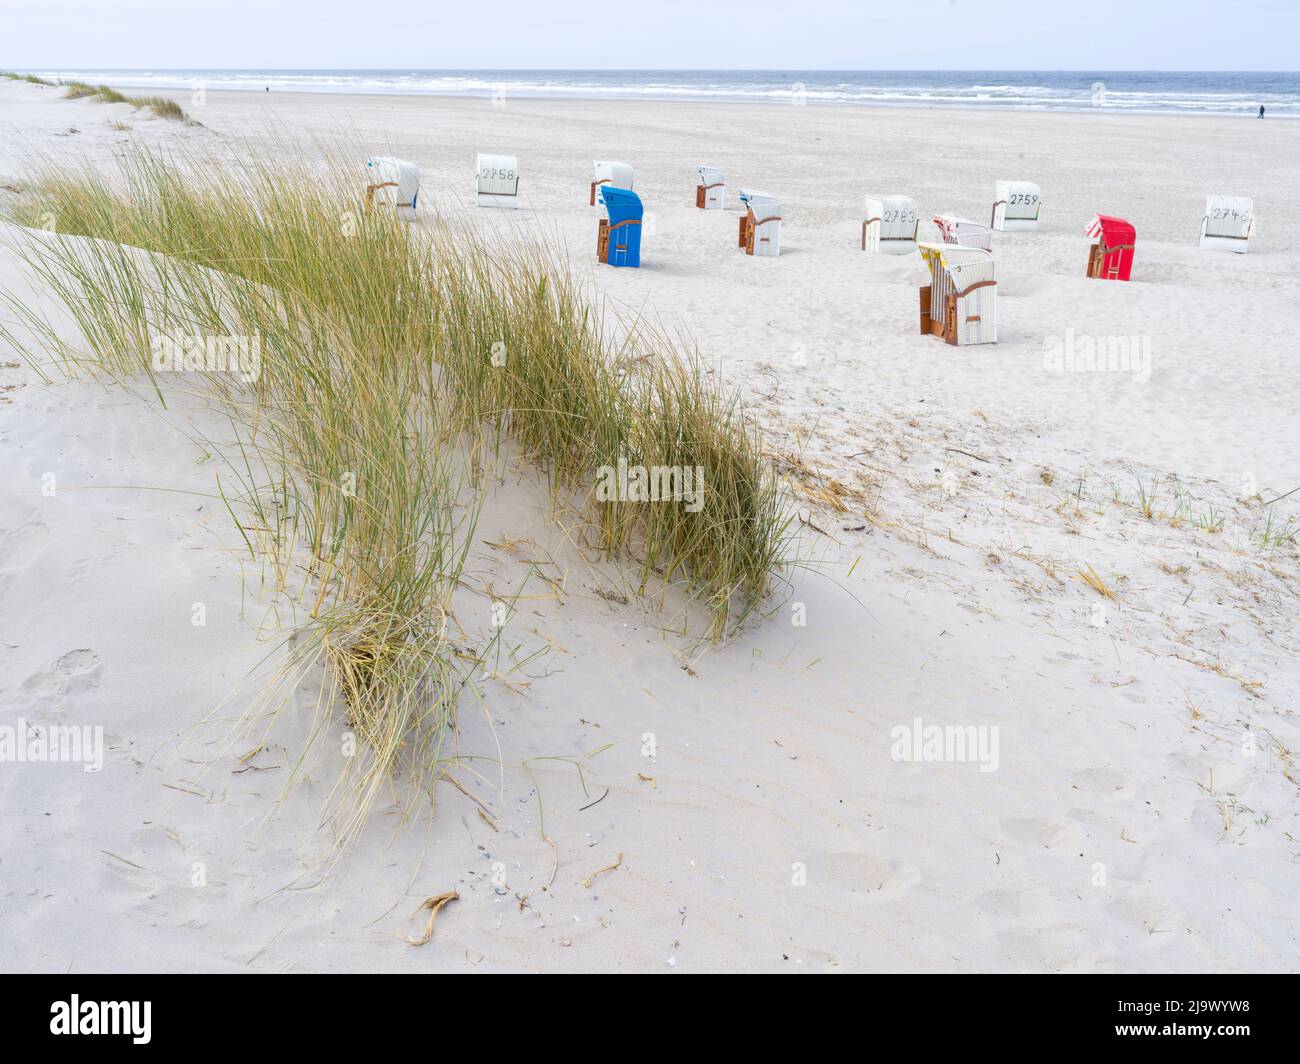 Strandkörbe in der Dünenlandschaft auf der Insel Juist, Nordsee, Niedersachsen, Deutschland Foto de stock